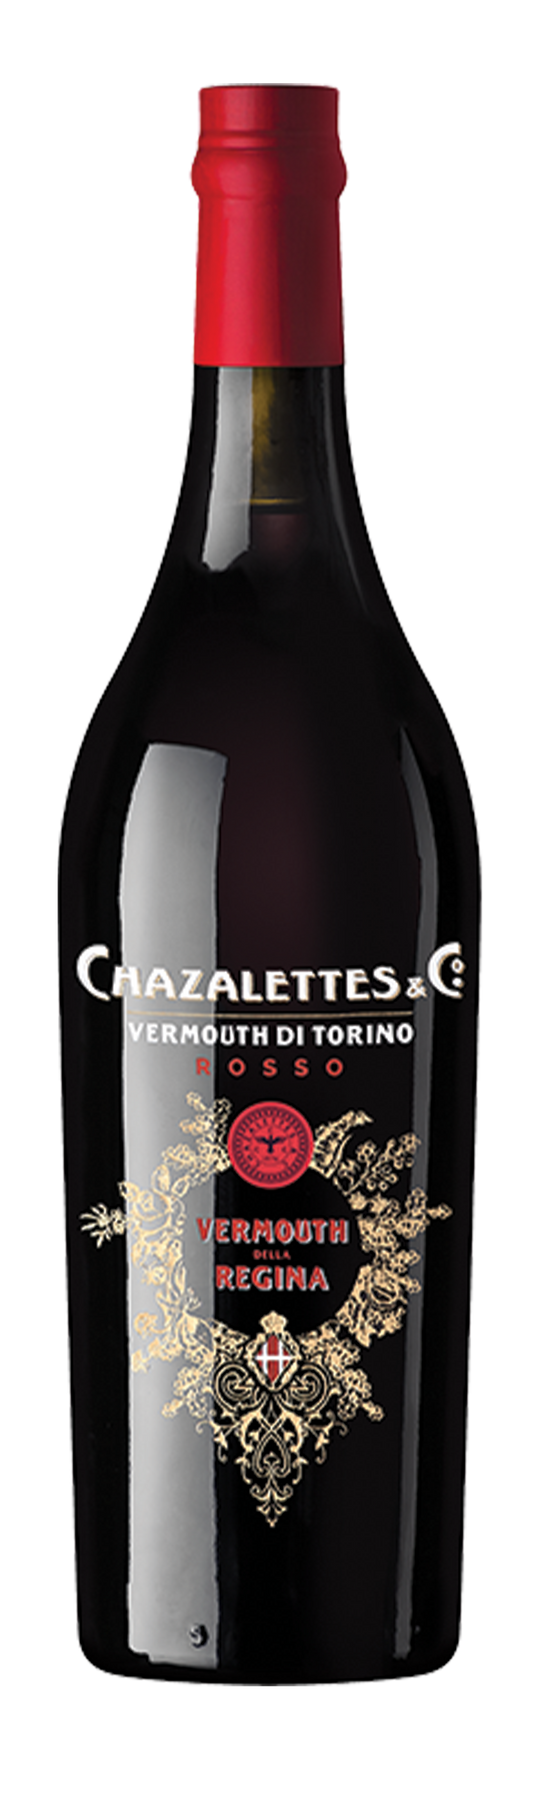 Chazalettes Rosso 16,5% 75cl Vermouth di Torino